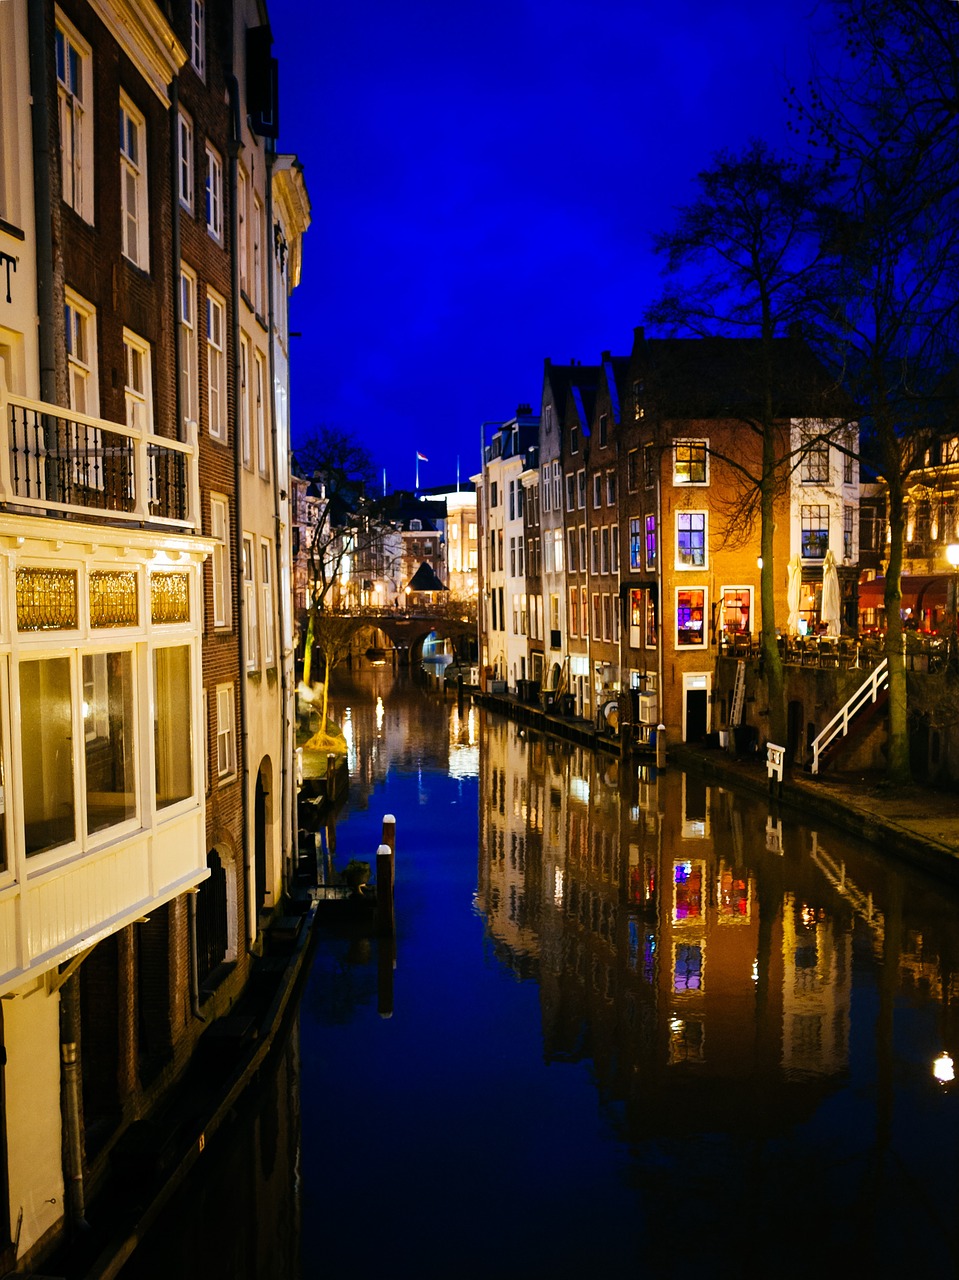 Kanalas, Utrecht, Vanduo, Nyderlandai, Holland, Olandų, Architektūra, Istorinis, Senas, Europa